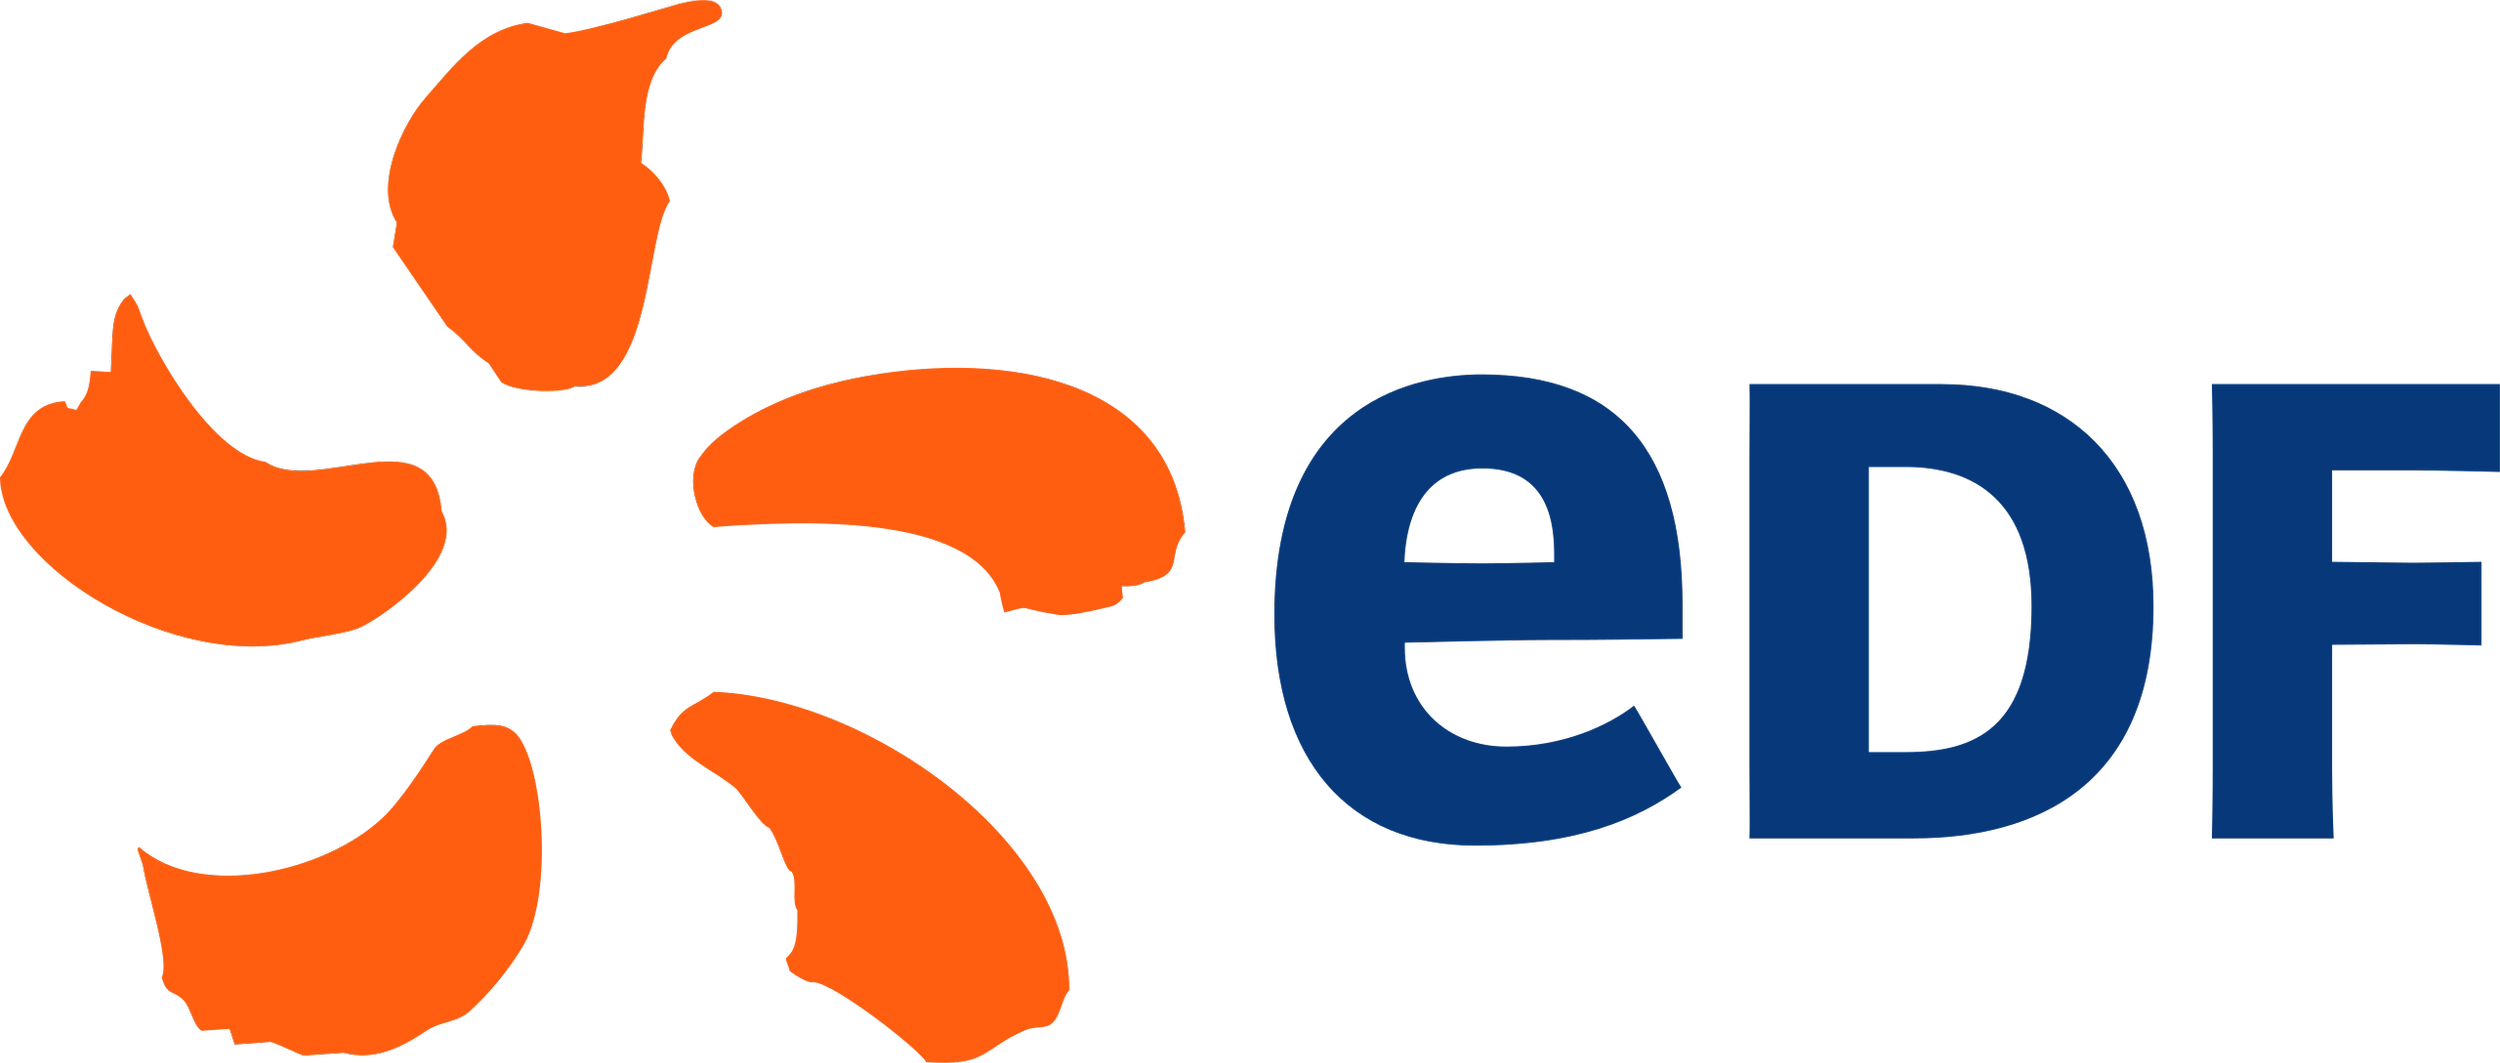 Électricité_de_France_logo.svg.png